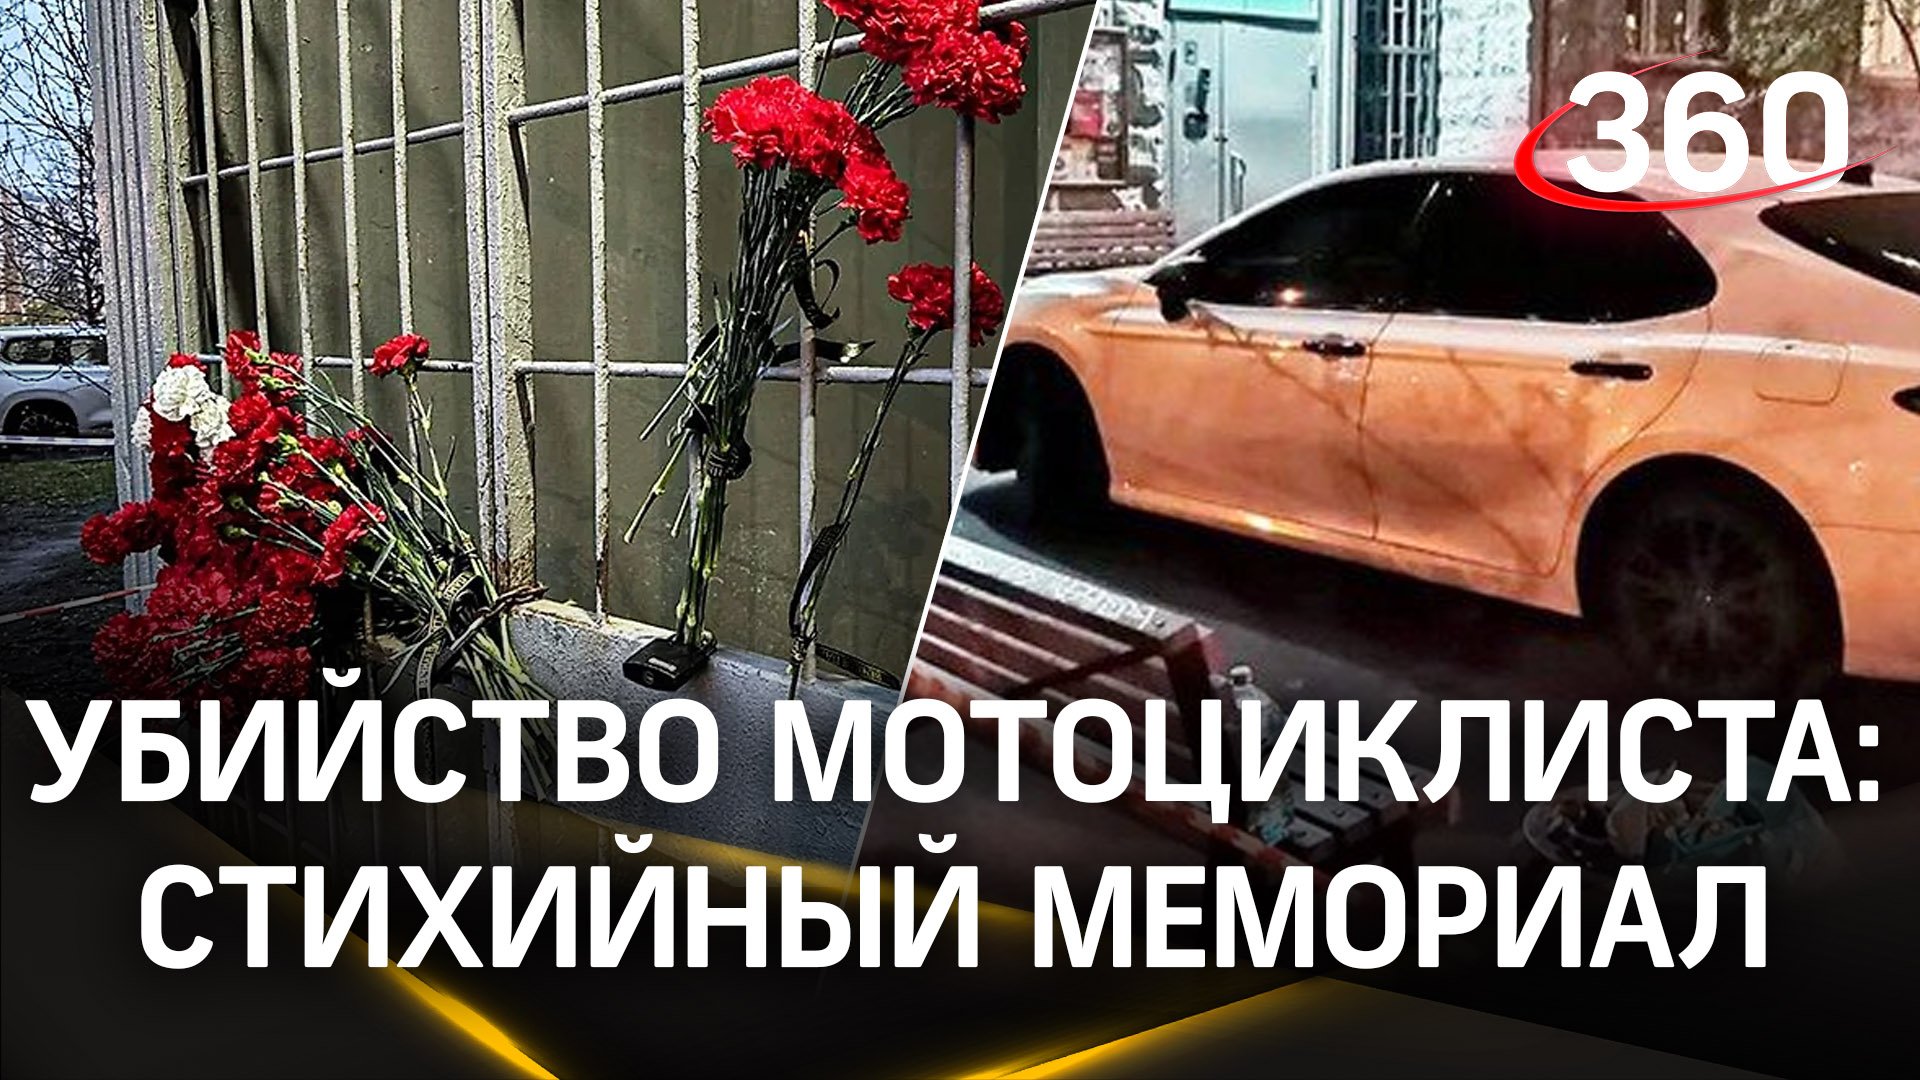 На месте убийства мотоциклиста в Люблино организовали стихийный мемориал